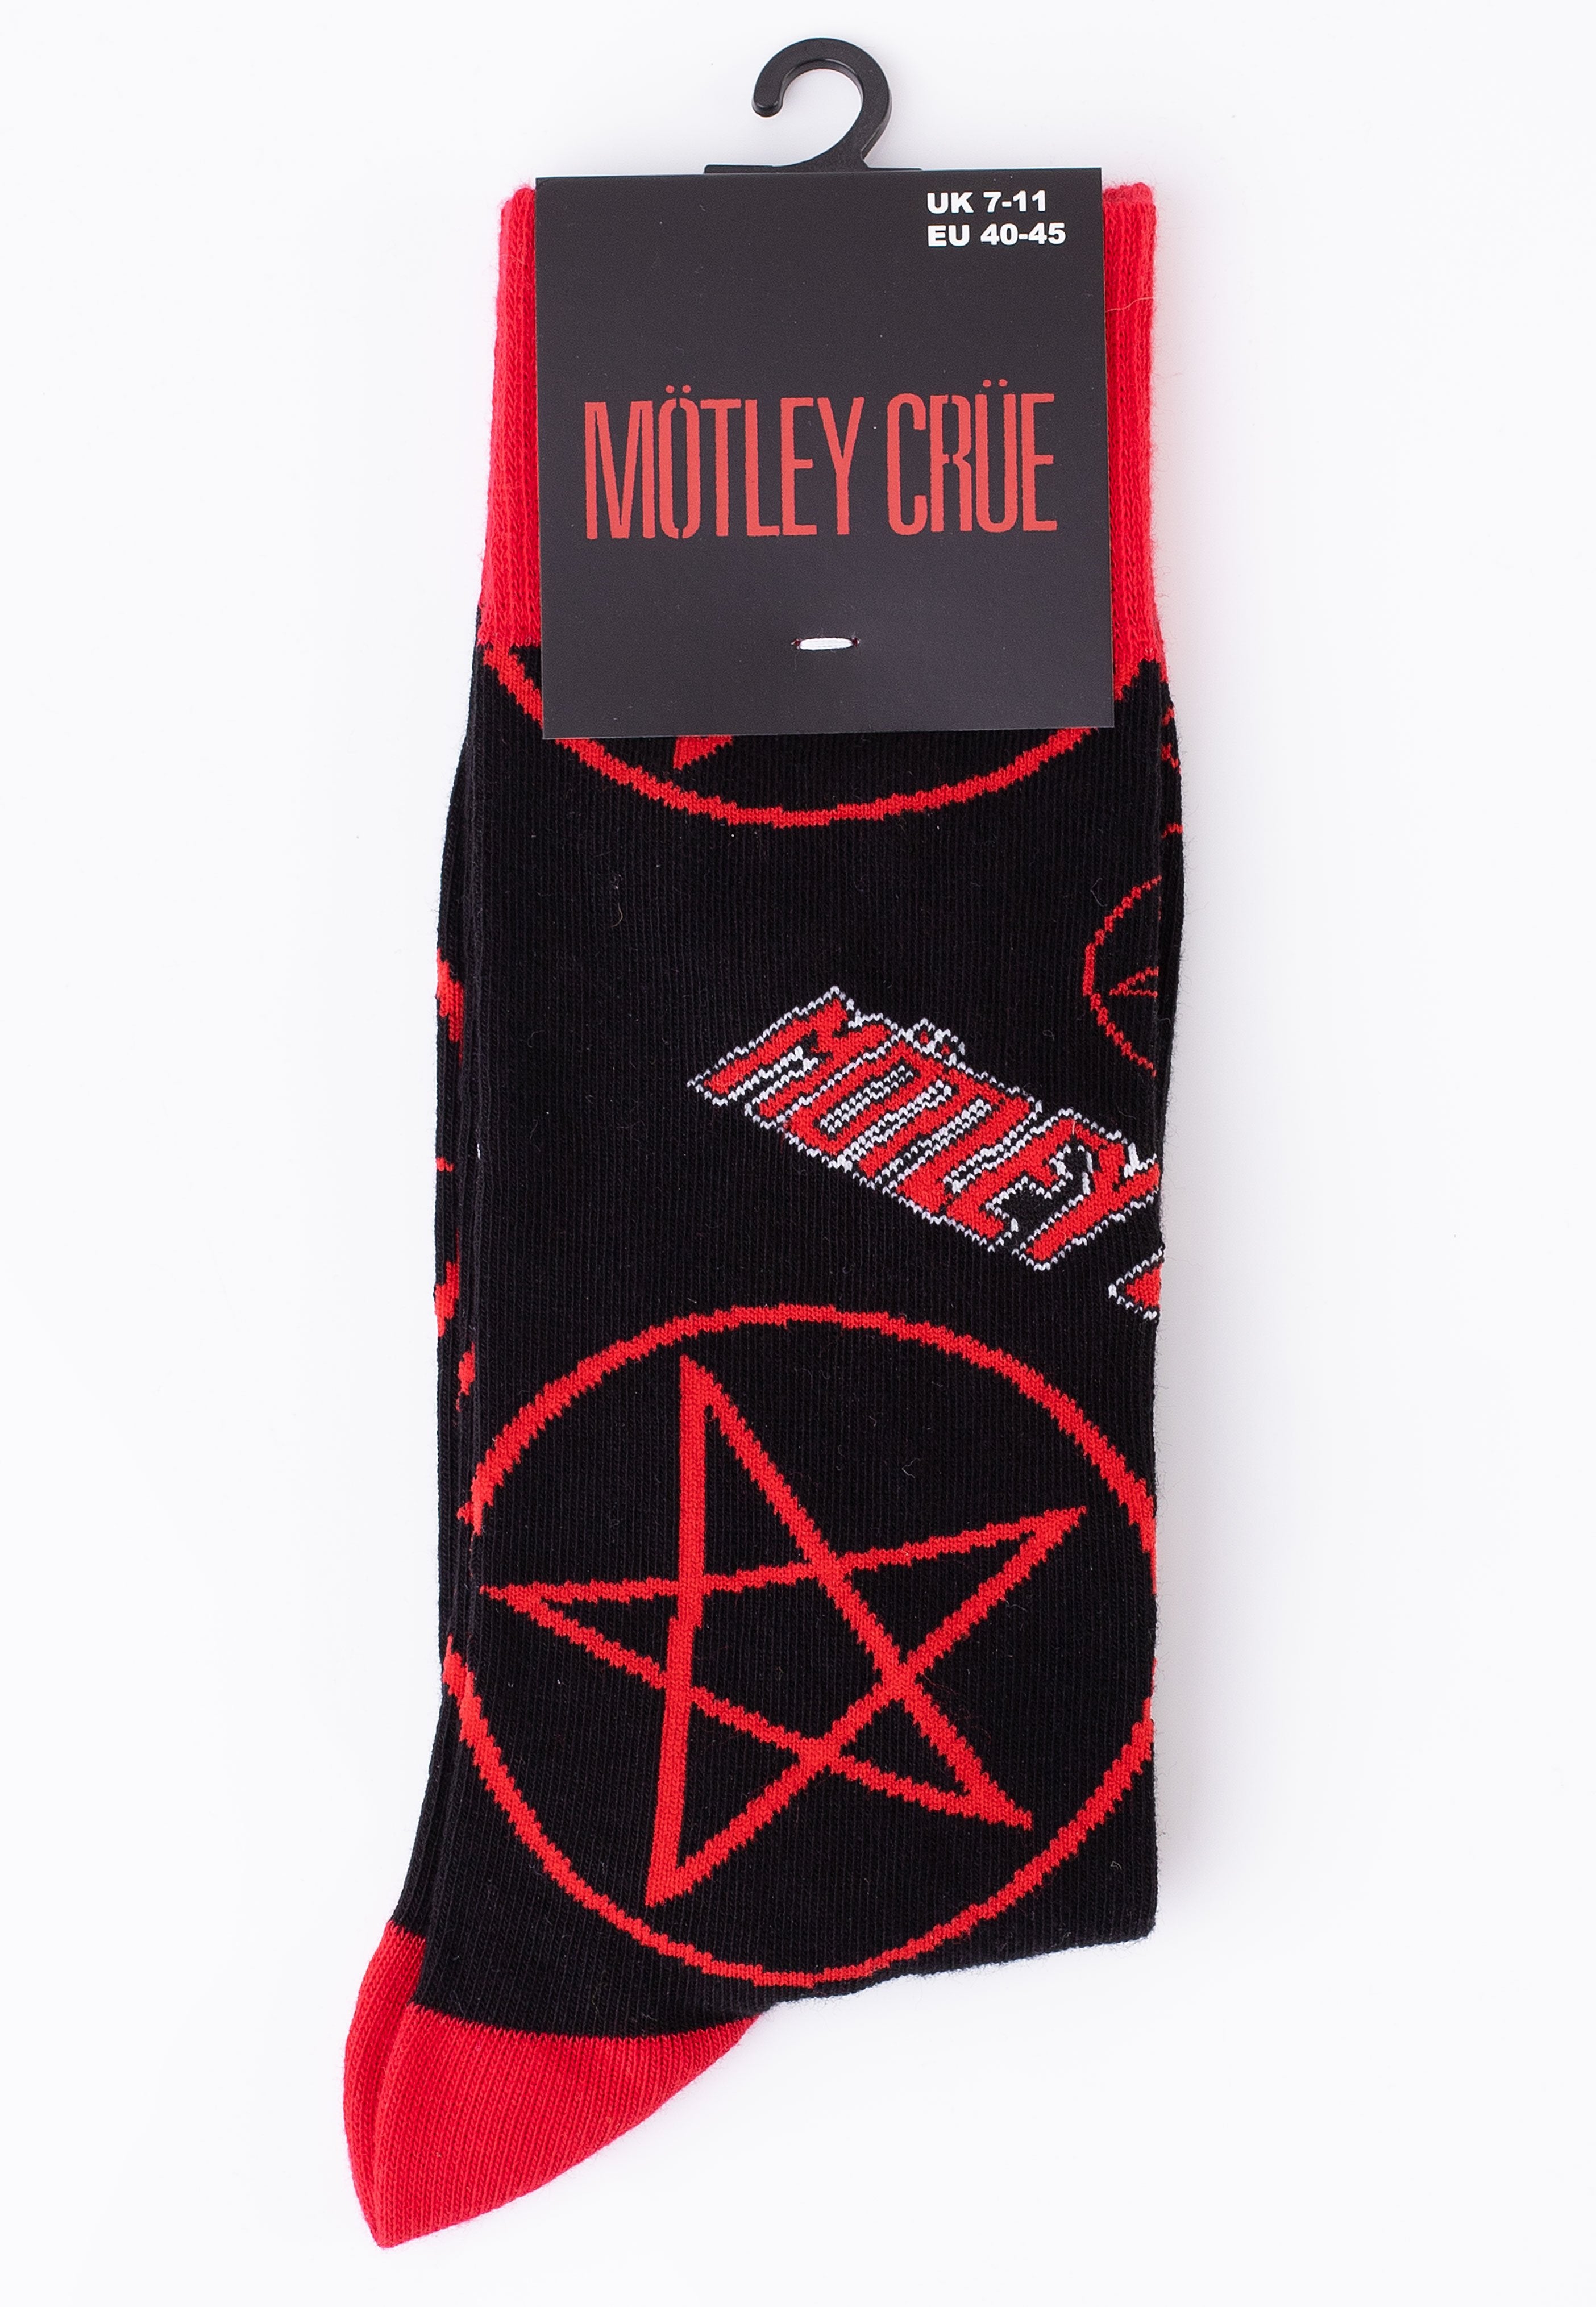 Mötley Crüe - Logos & Pentagrams - Socks